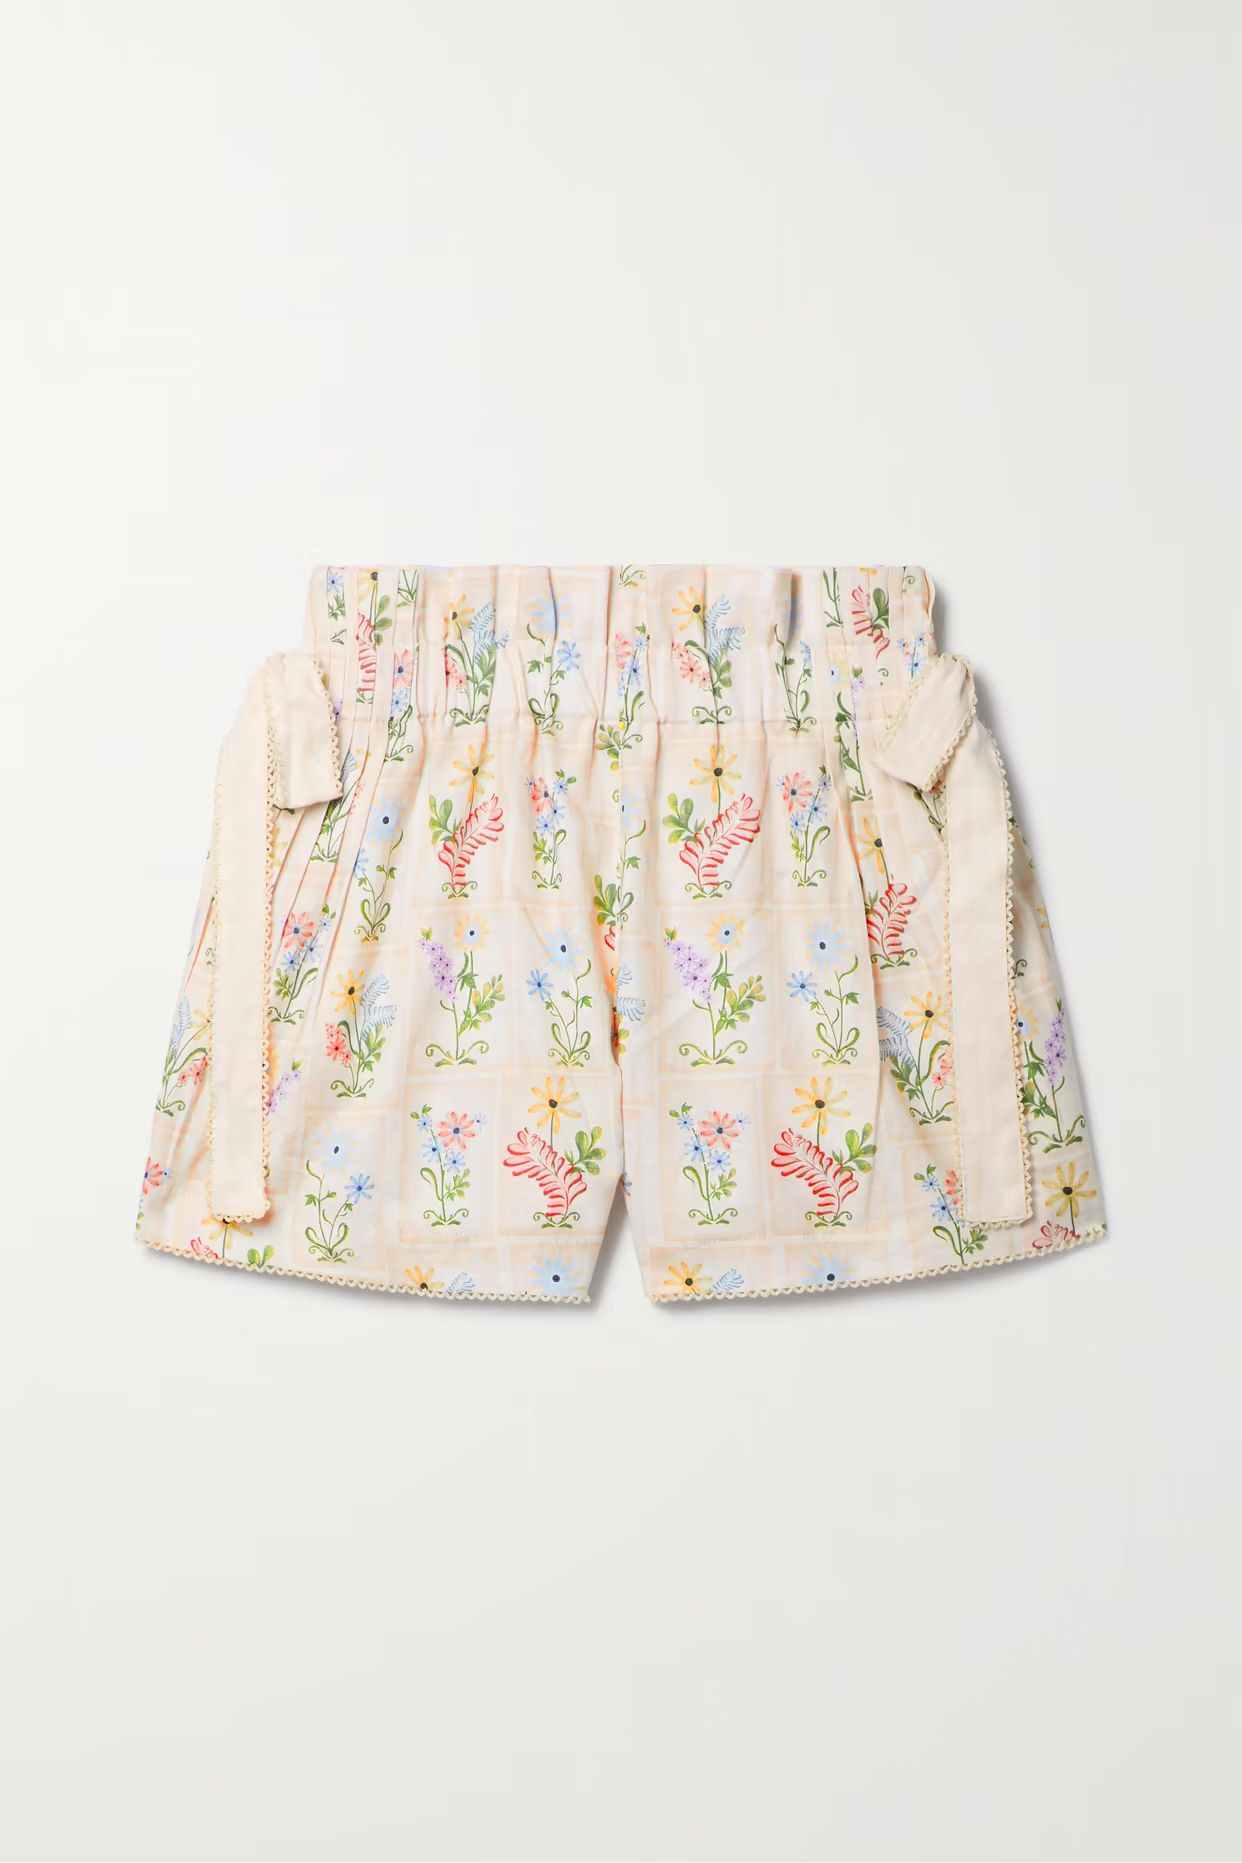 Agua by Agua Bendita - Janeiro Pradera Bow-detailed Floral-print Linen-gauze Shorts - Neutrals | NET-A-PORTER (US)